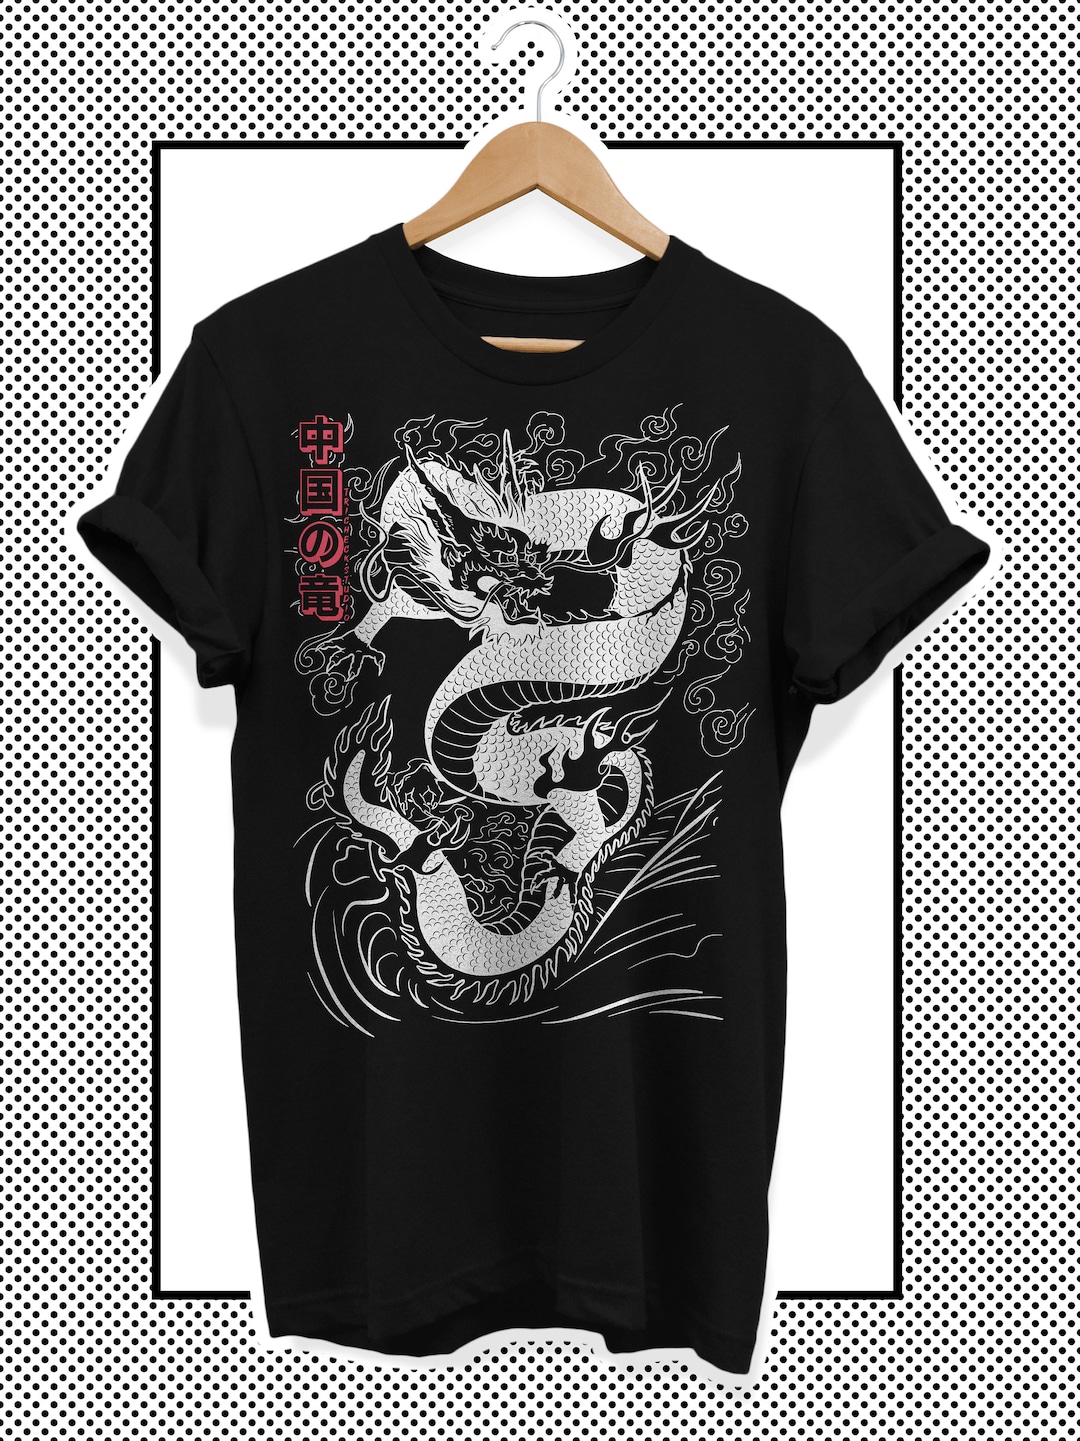 Unisex Japan T-shirt Japanese Dragon - Etsy